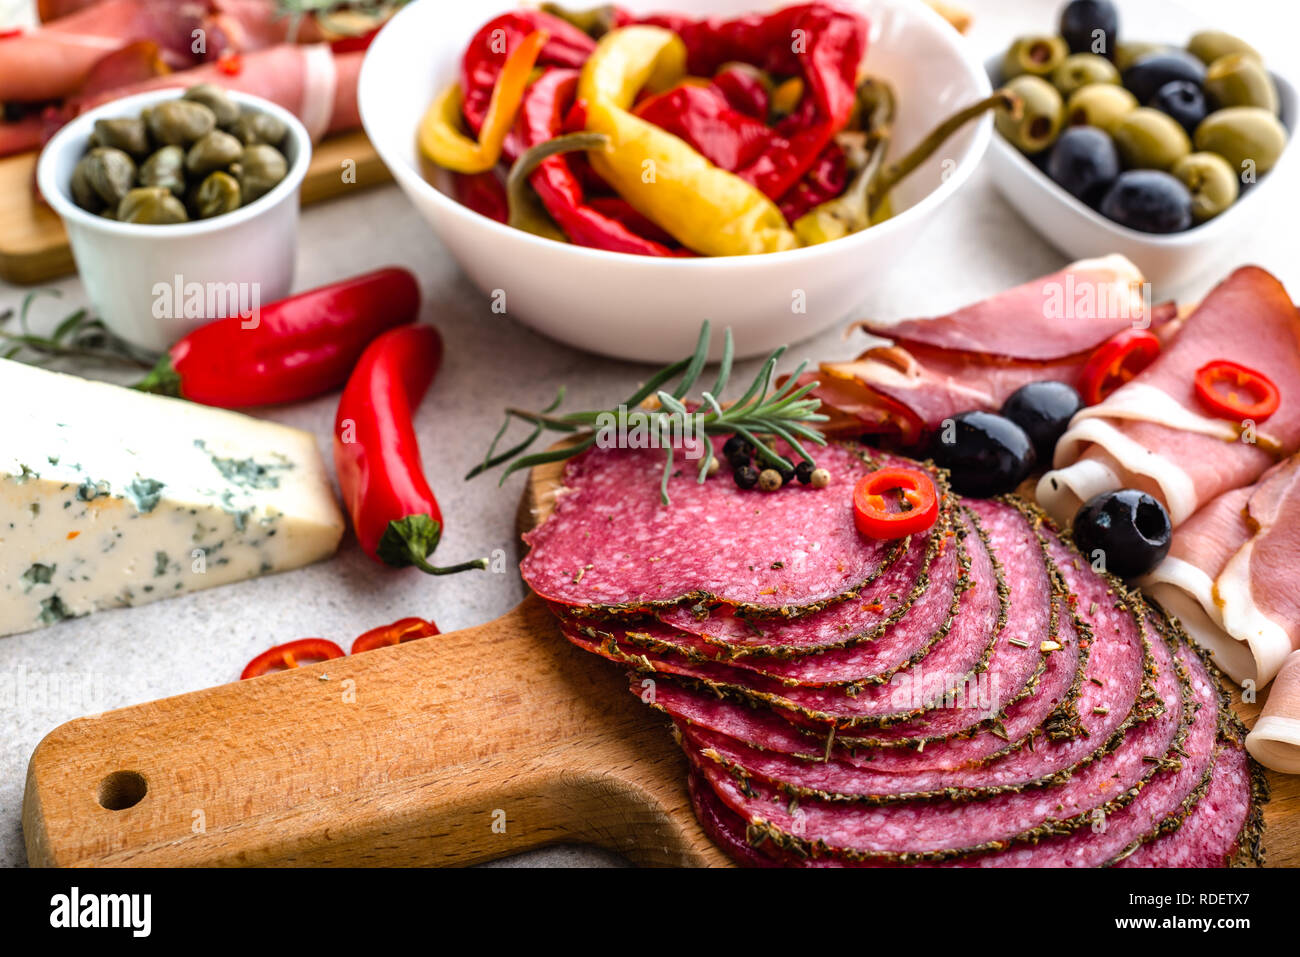 La tabella con i prodotti alimentari provenienti dalla Spagna, fette di salame, prosciutto e altri antipasti piccanti, DIETA MEDITERRANEA Foto Stock